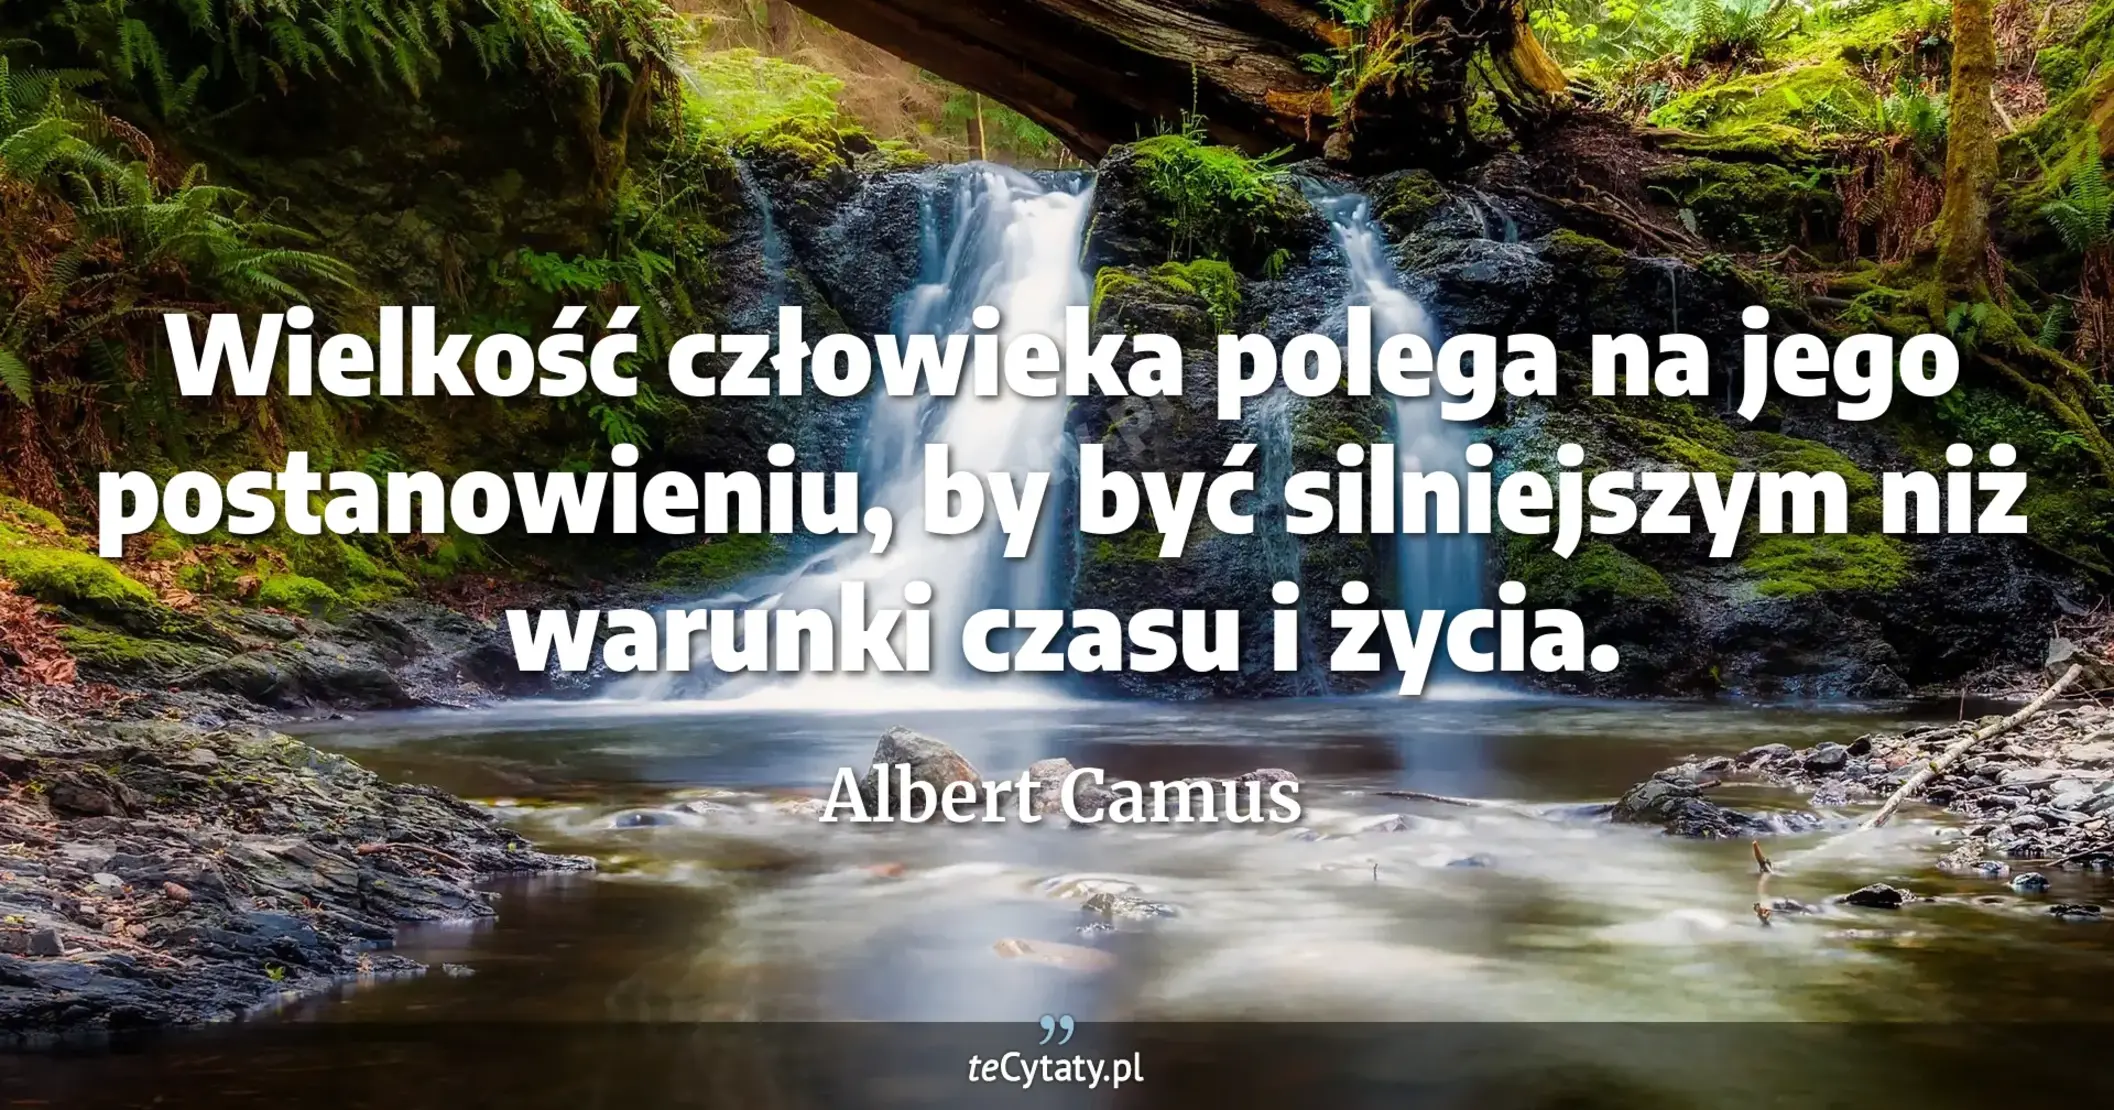 Wielkość człowieka polega na jego postanowieniu, by być silniejszym niż warunki czasu i życia. - Albert Camus